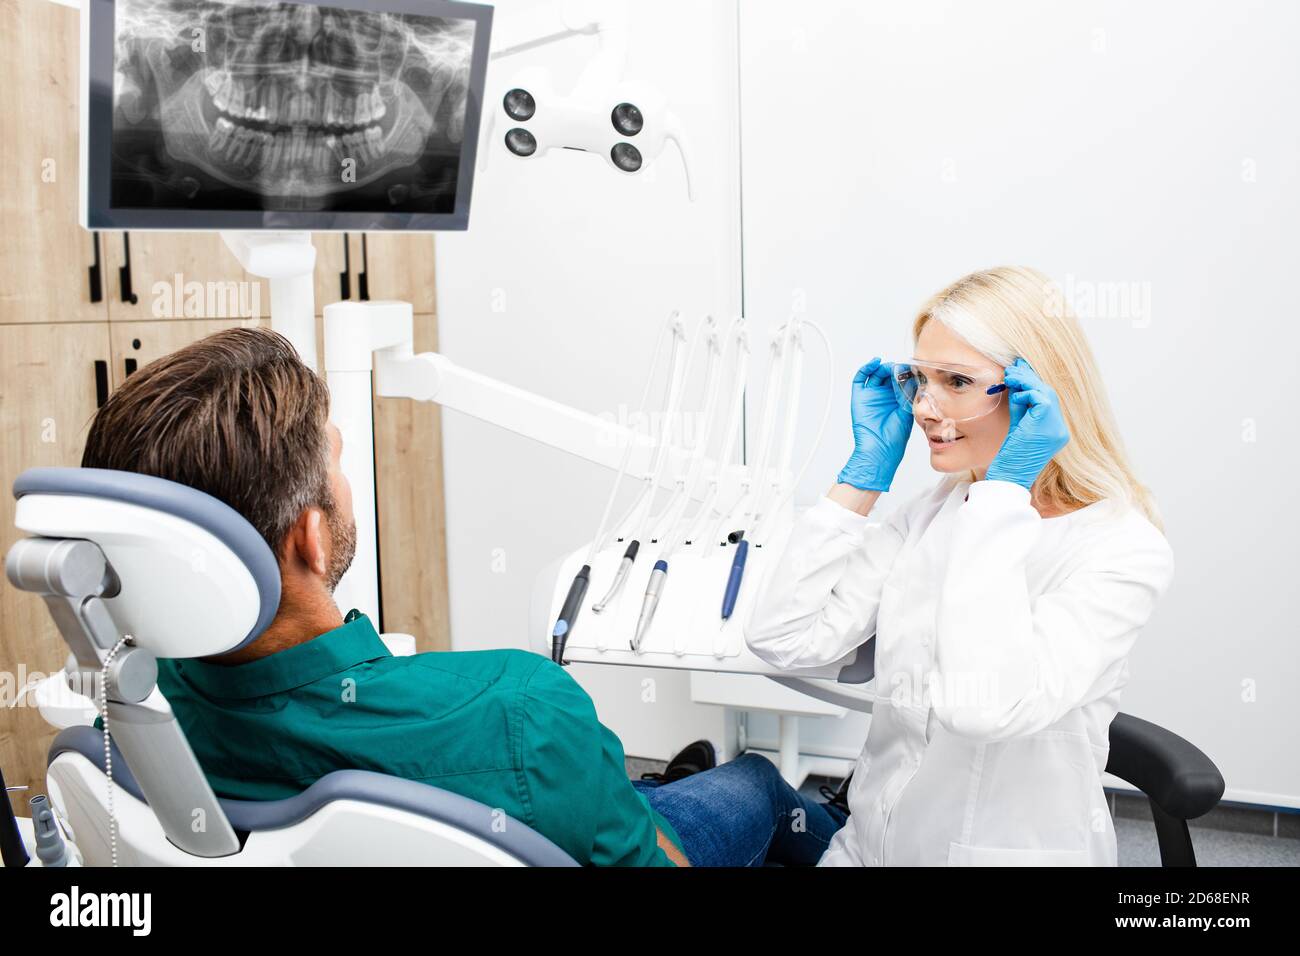 La femme dentiste se prépare à travailler avec le patient masculin. Dentiste ajustant les lunettes de protection pendant son lieu de travail Banque D'Images